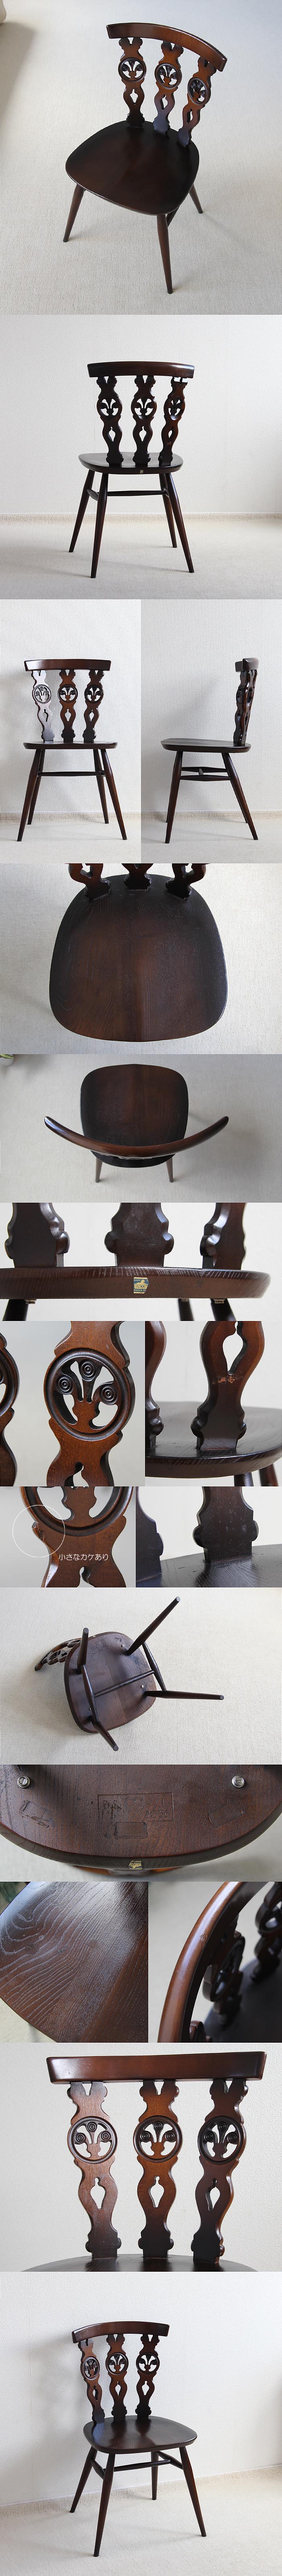 イギリス ヴィンテージ アーコールチェア ERCOL 木製椅子 アンティーク 家具 「シスルバックチェア」V-739